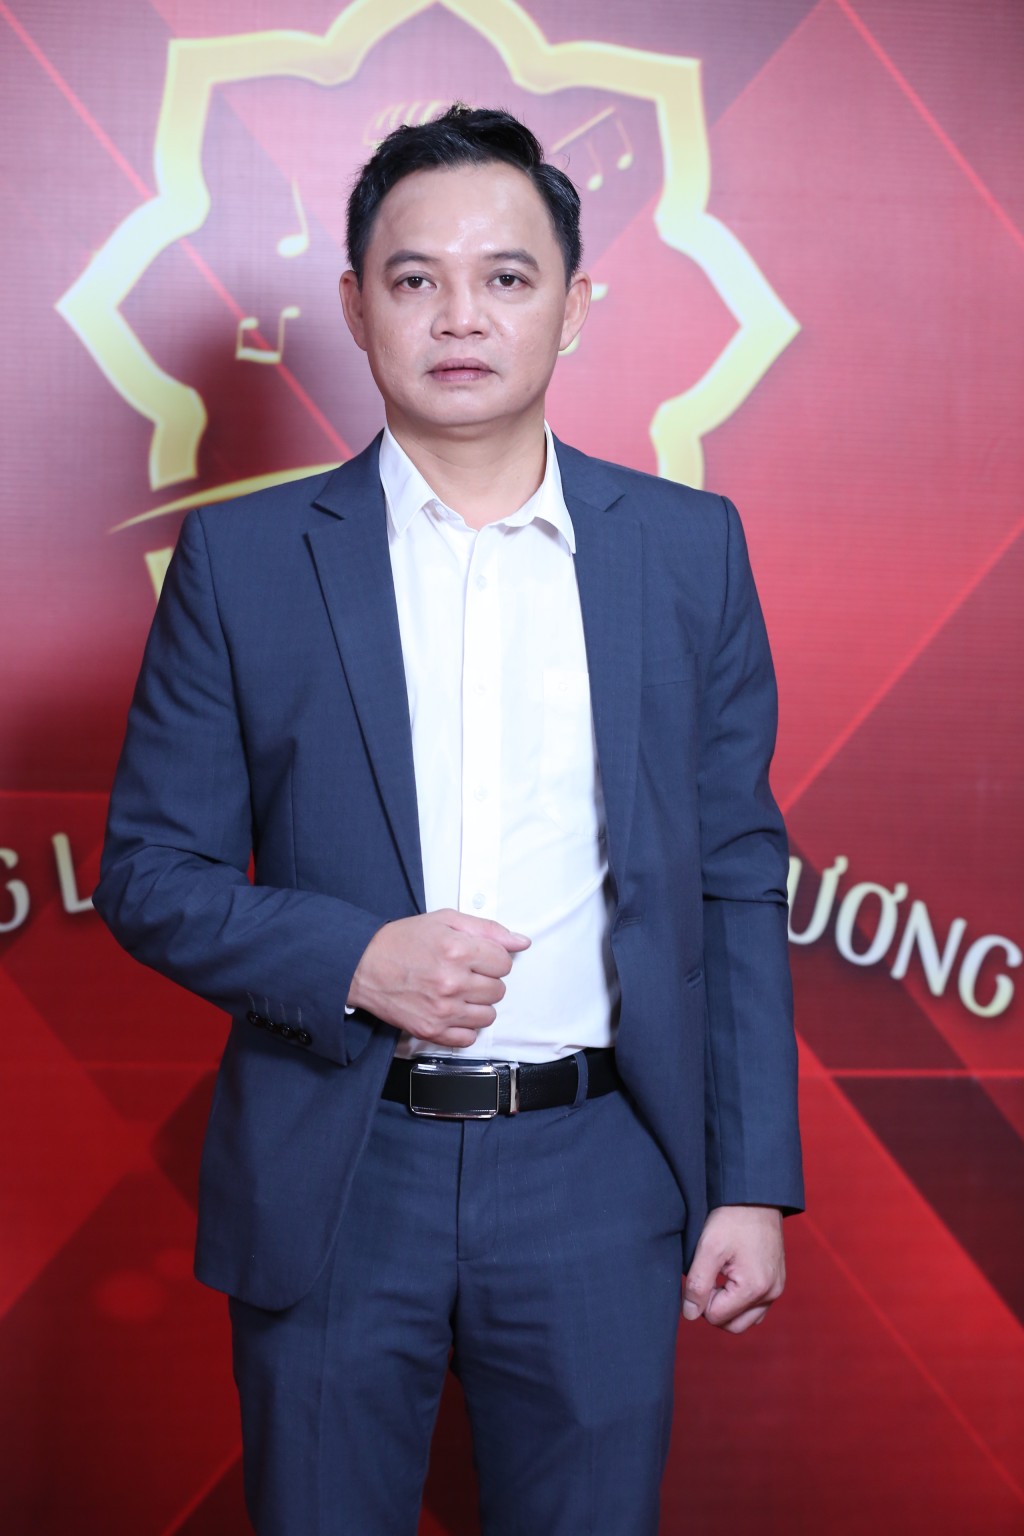 MC Quyền Linh khâm phục trước công việc của kỹ sư y sinh Bệnh viện Bạch Mai